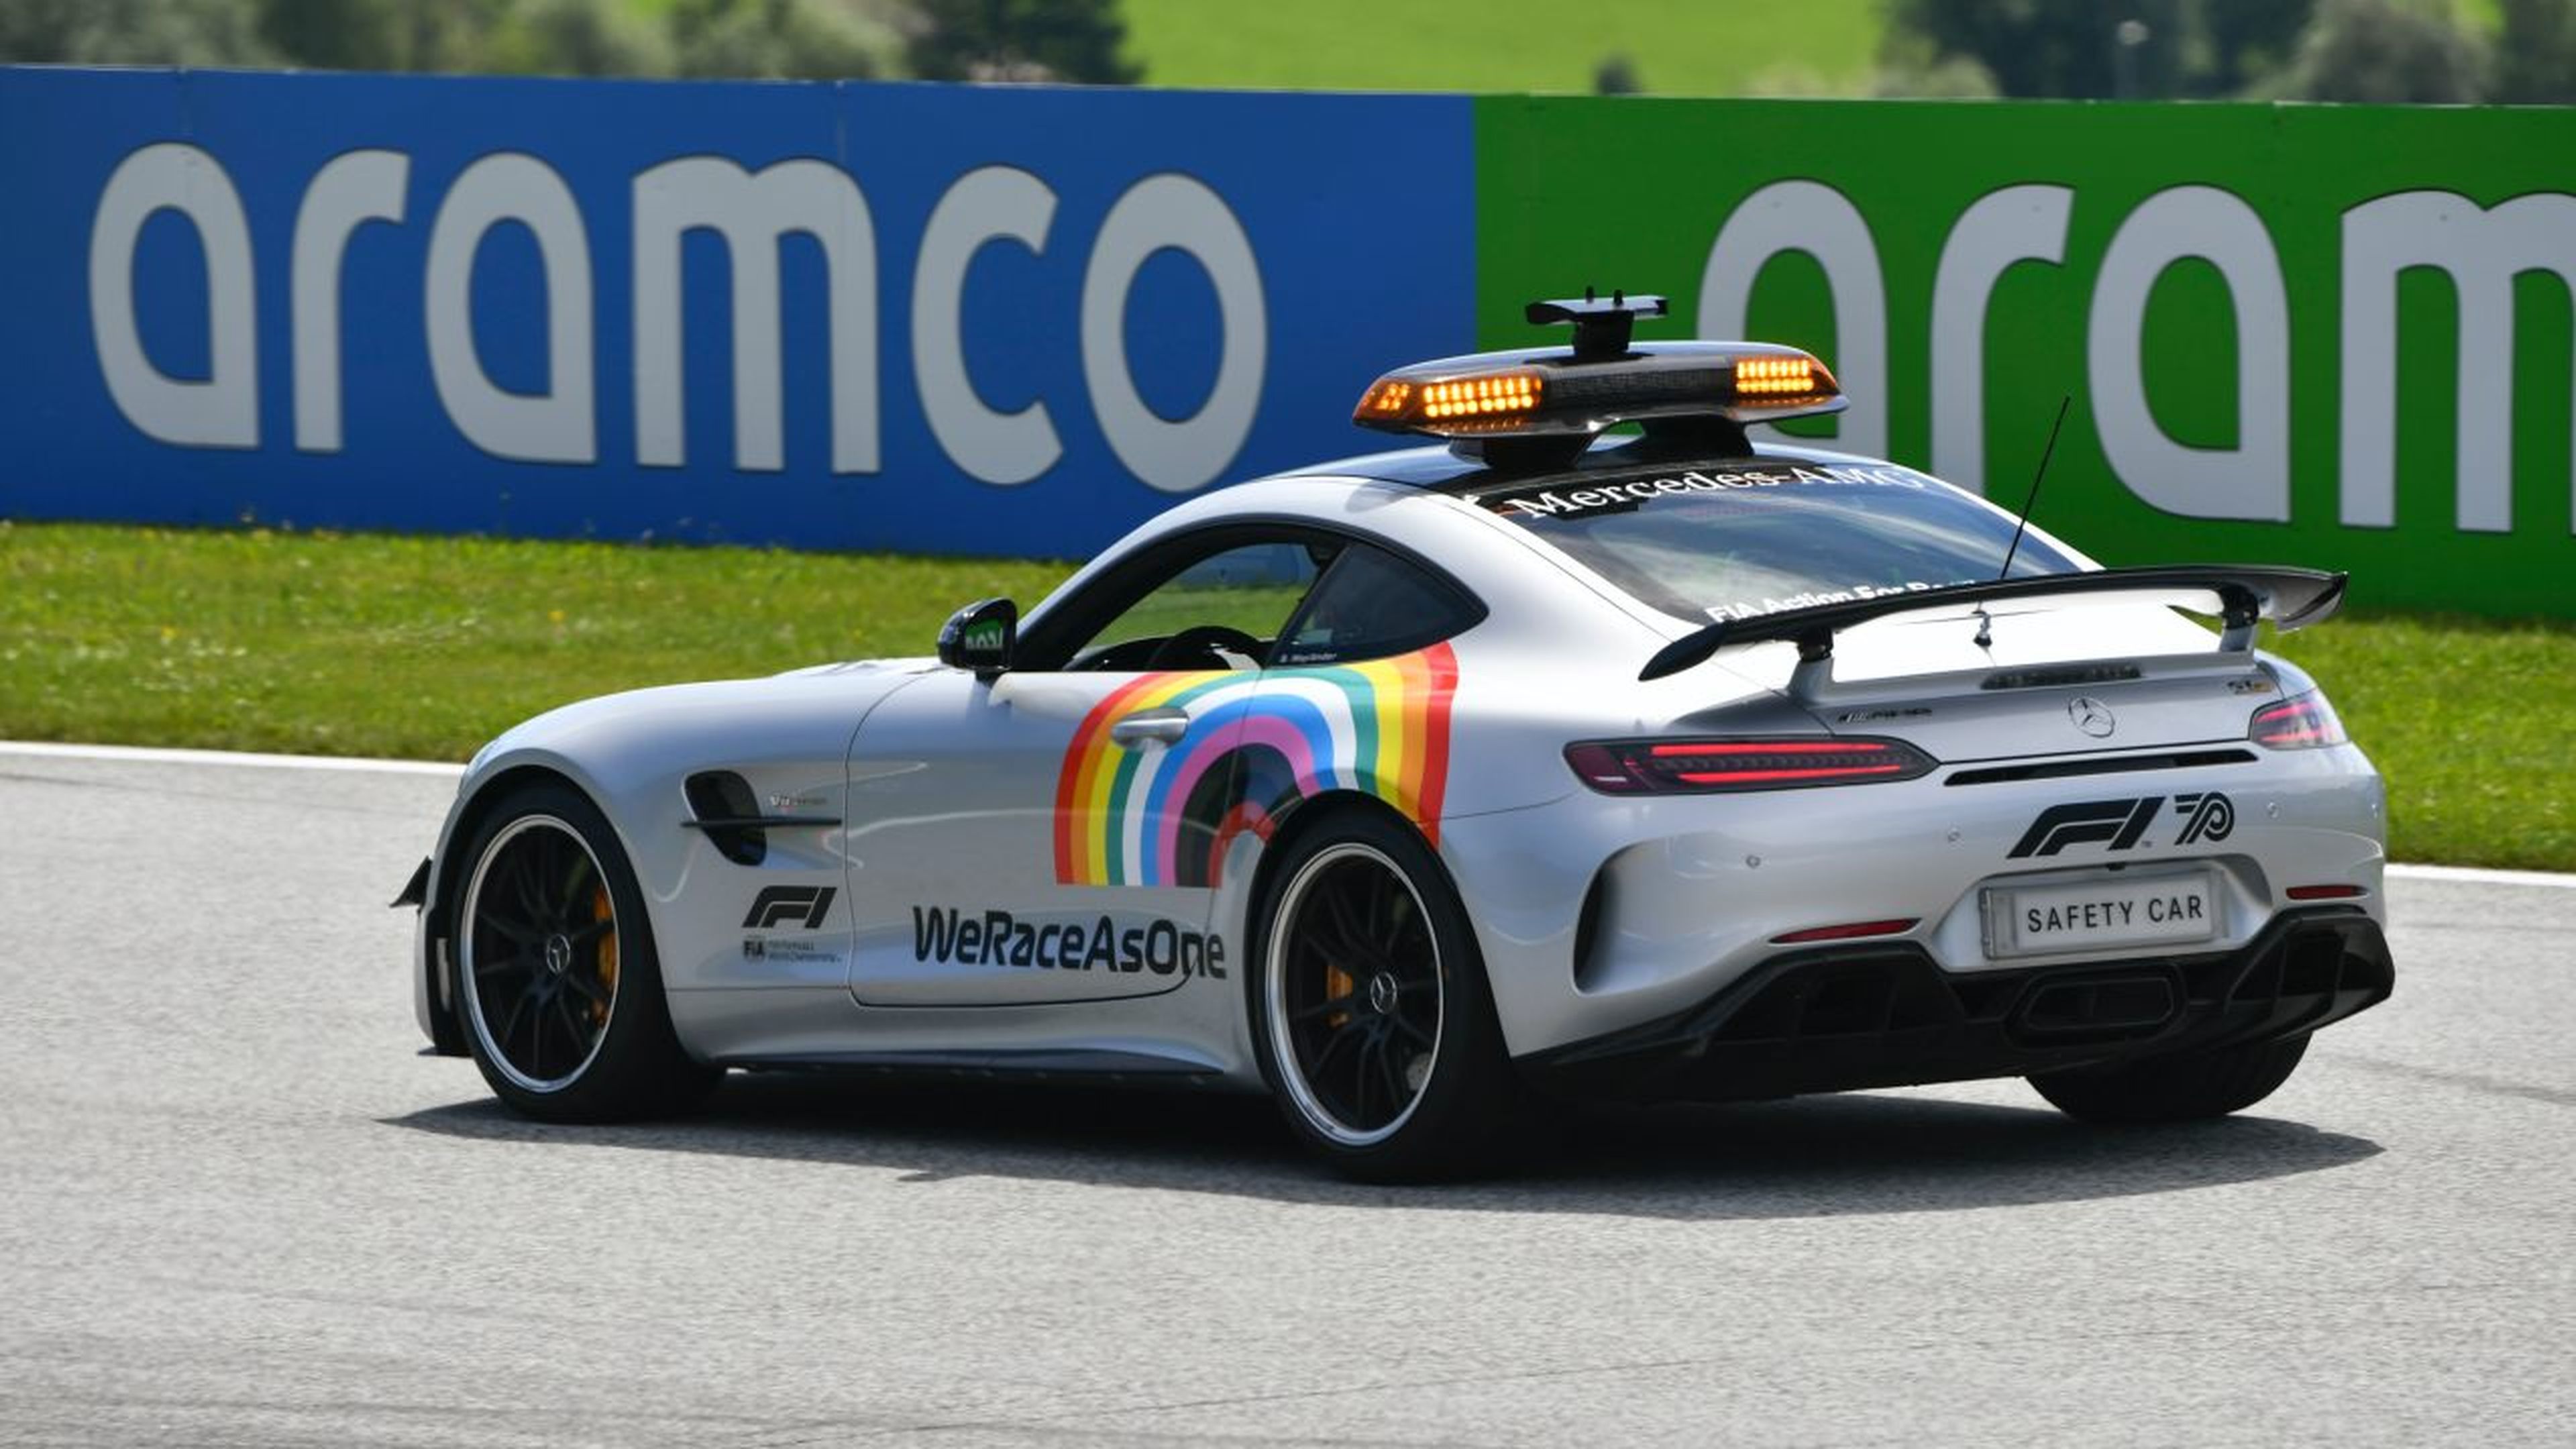 El coche de seguridad de la F1 2020 luce el logo de "We Race As One" iniciativa a favor de la diversidad de la F1.